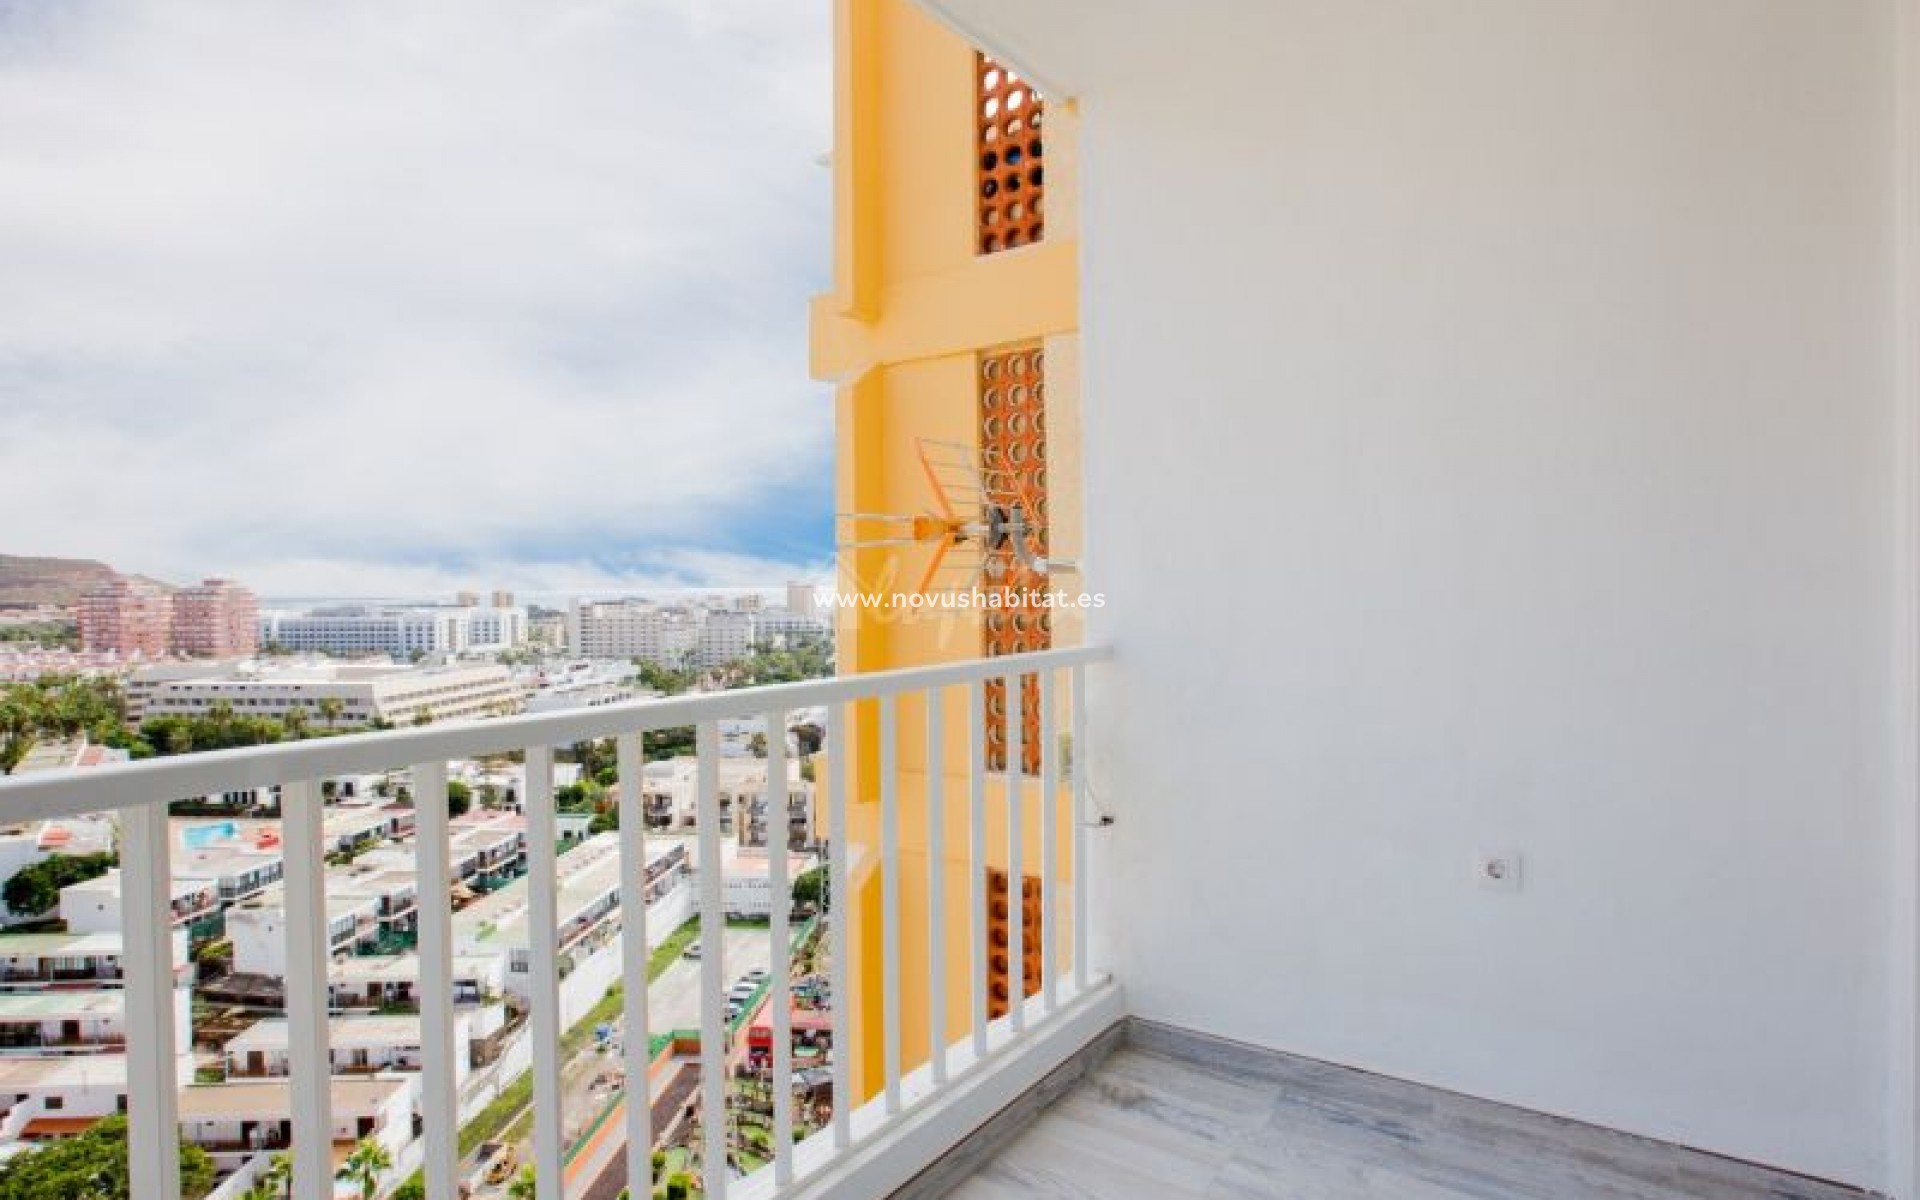 Segunda mano - Apartamento - Playa De Las Americas - Torres De Yomely Las Americas Tenerife